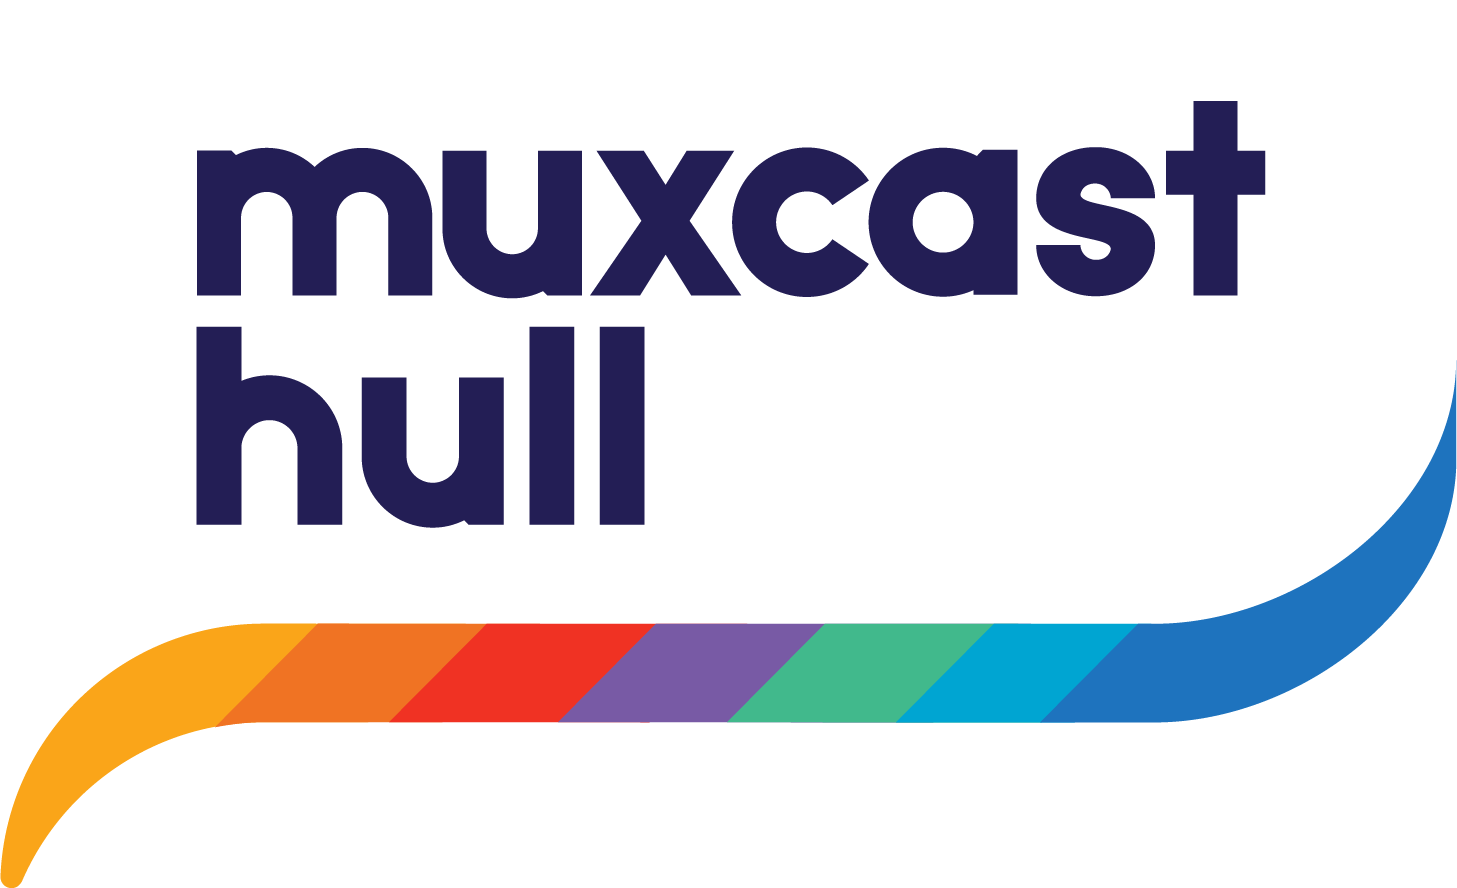 Muxcast Hull